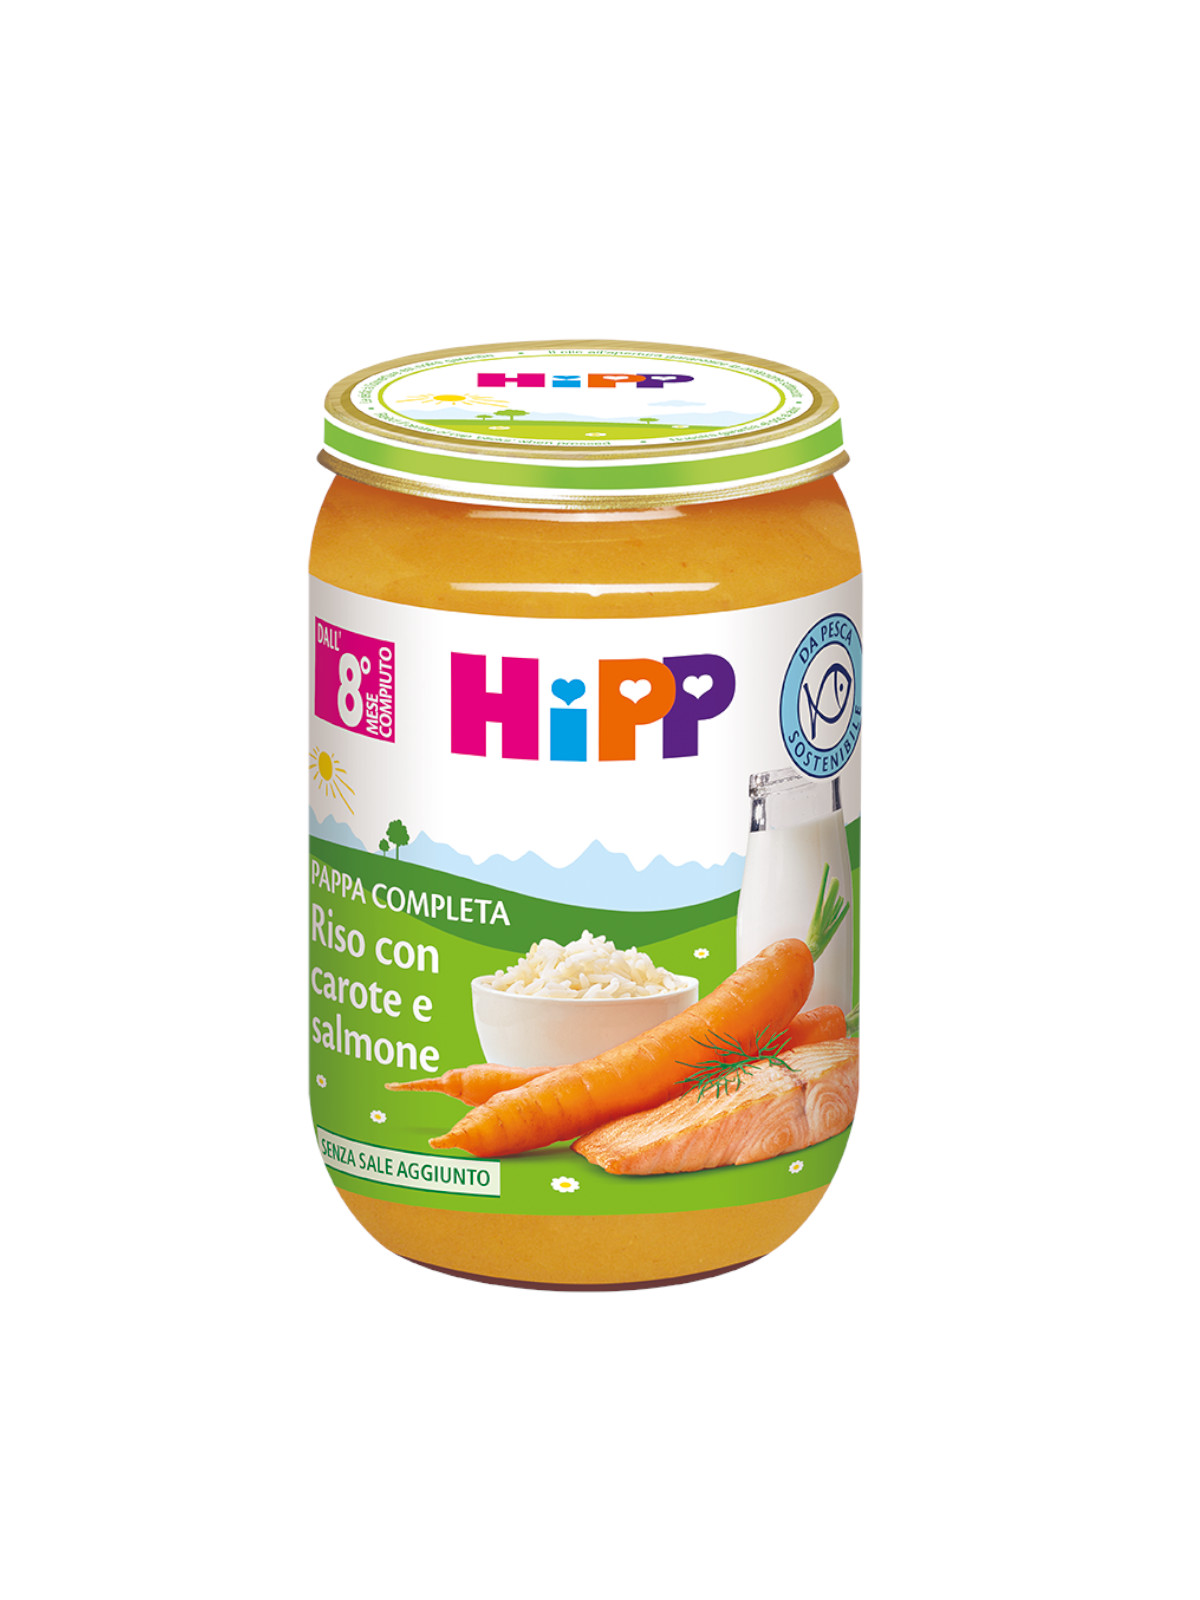 Pappa pronta riso, carote e salmone 220g - Hipp